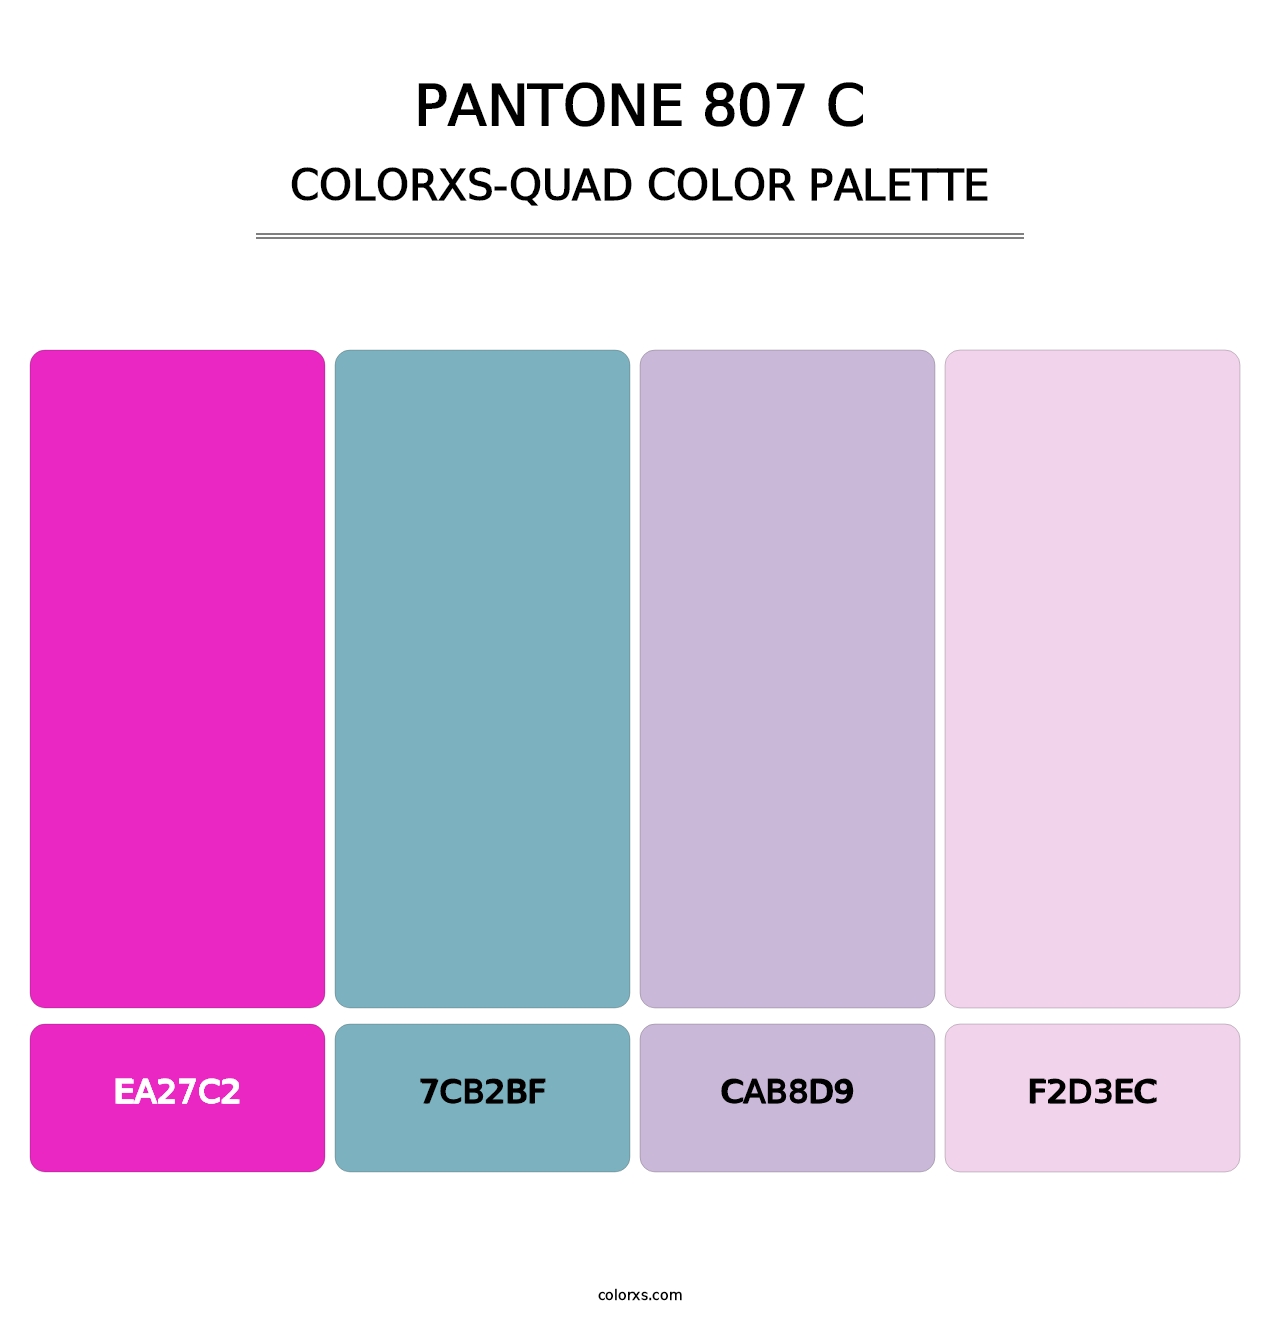 PANTONE 807 C - Colorxs Quad Palette